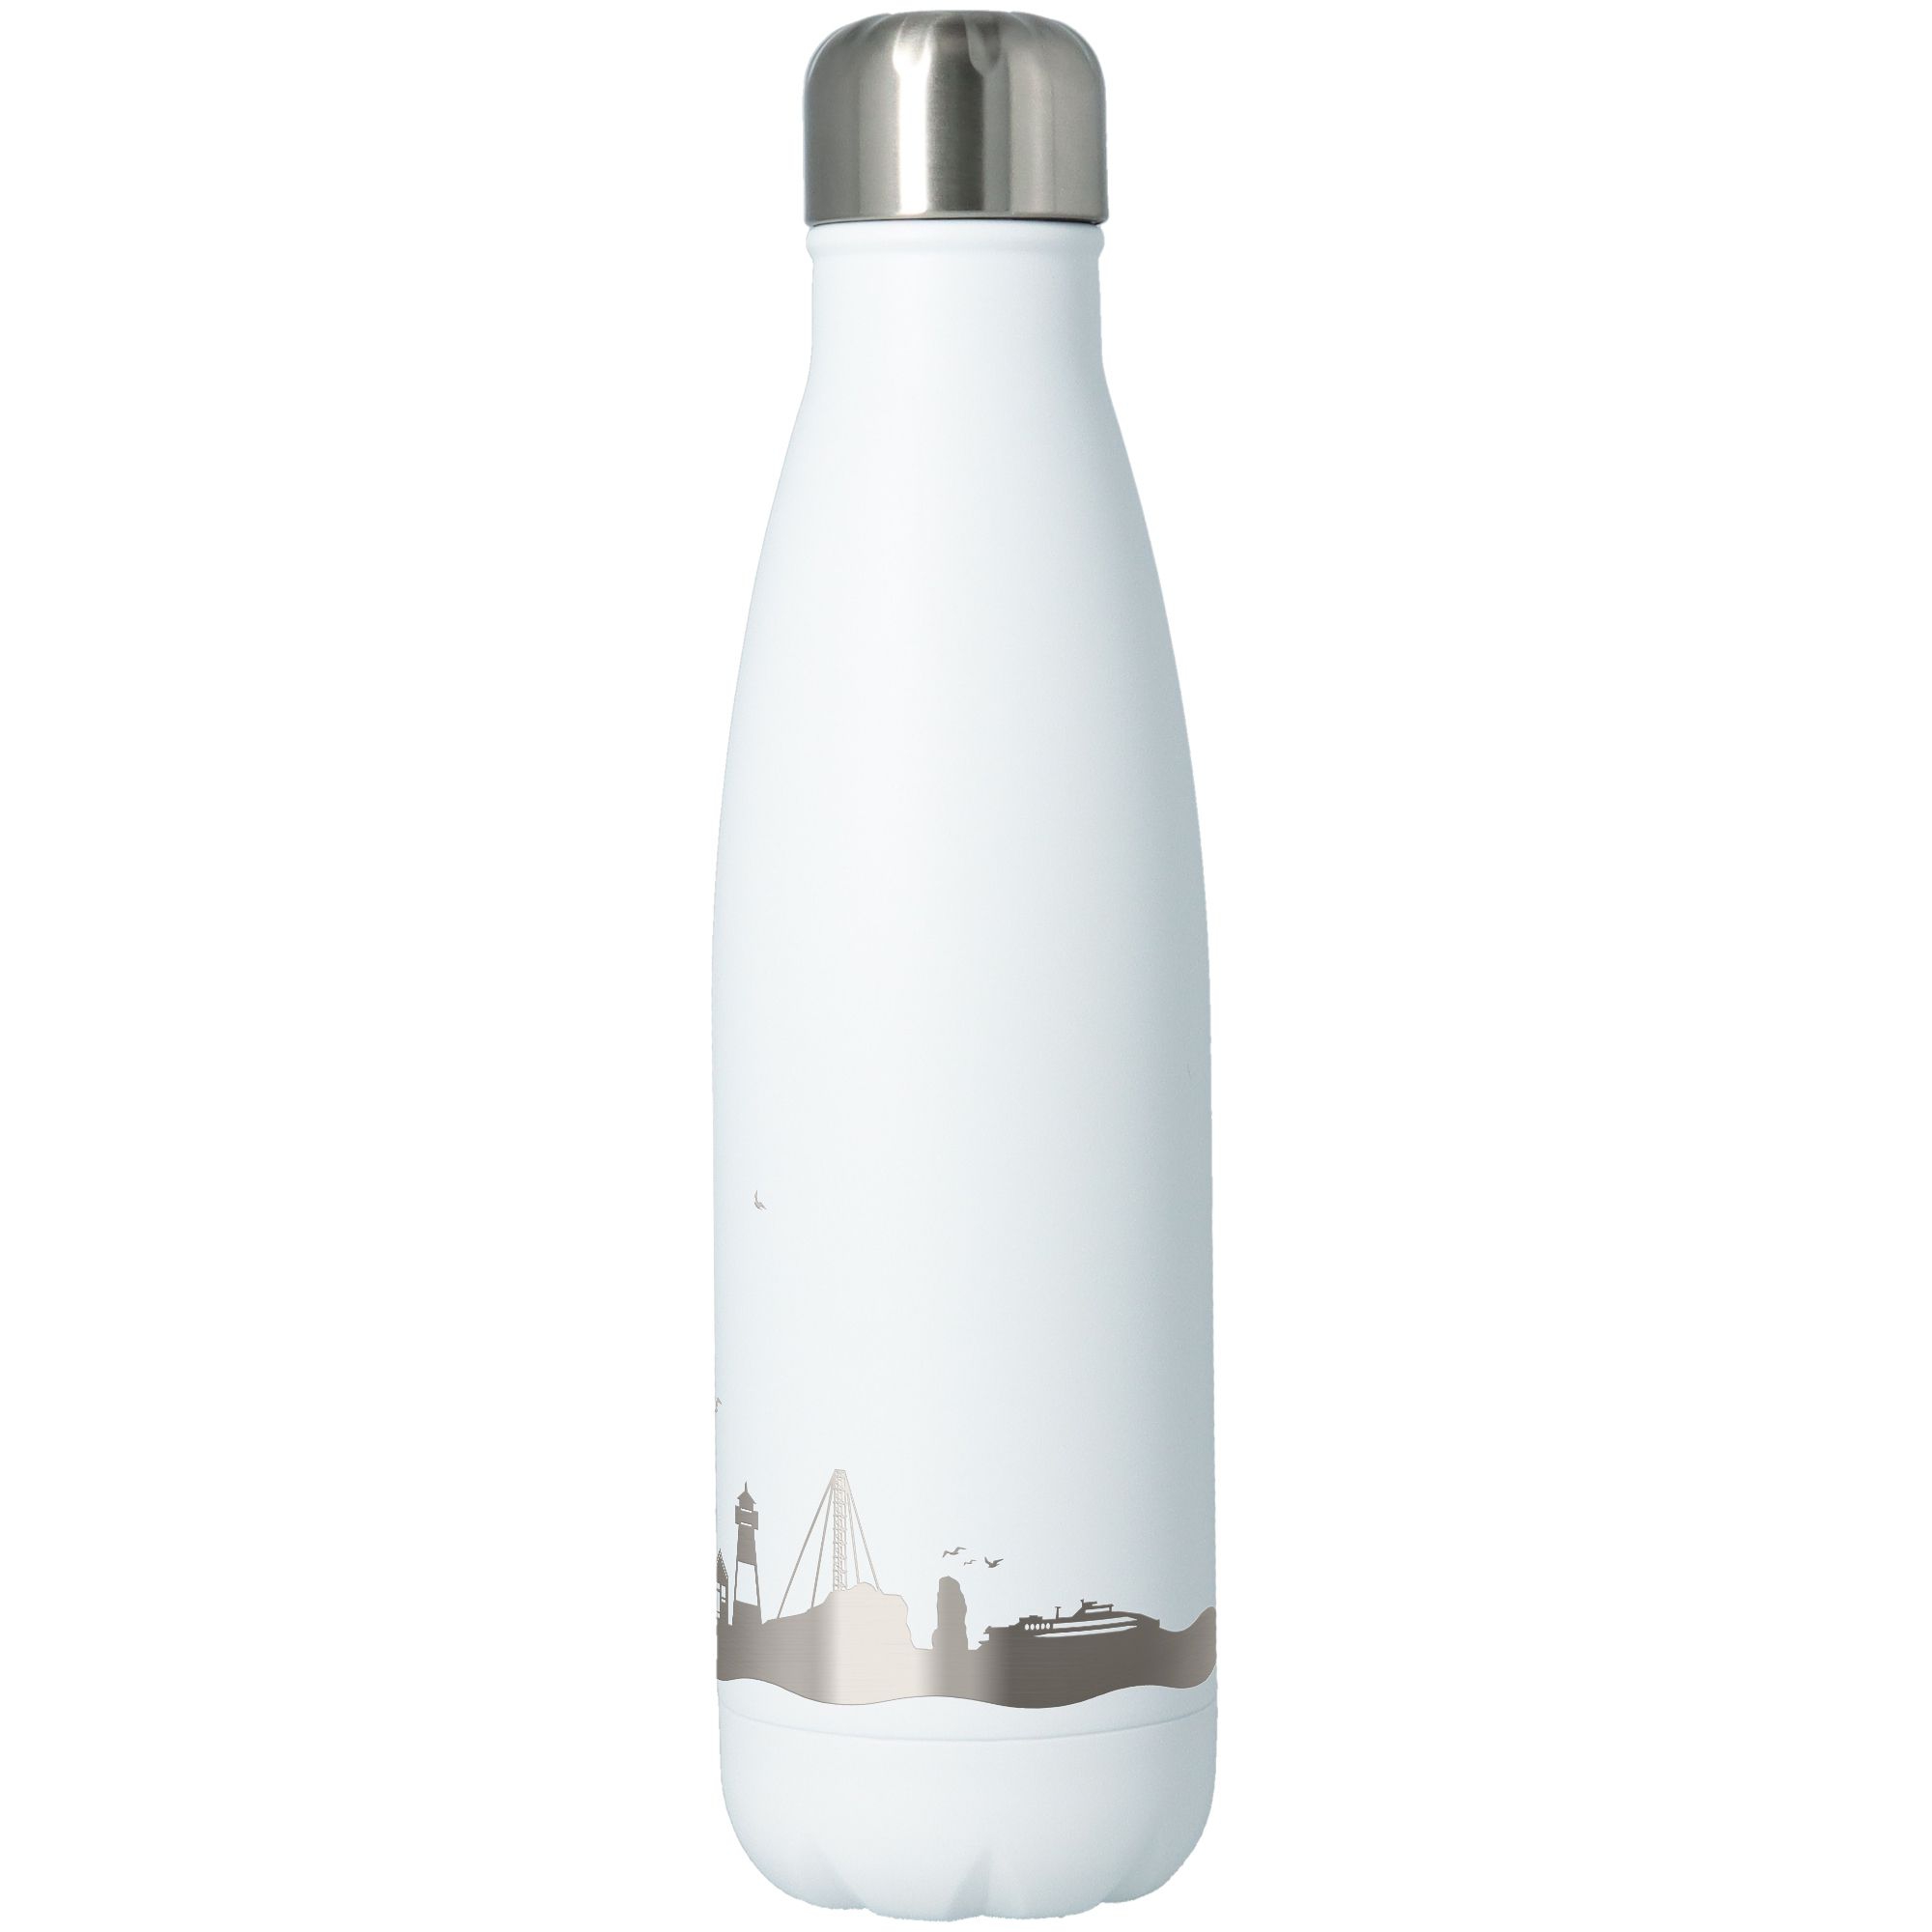 Trinkflasche Skyline Helgoland Weiß 500ml